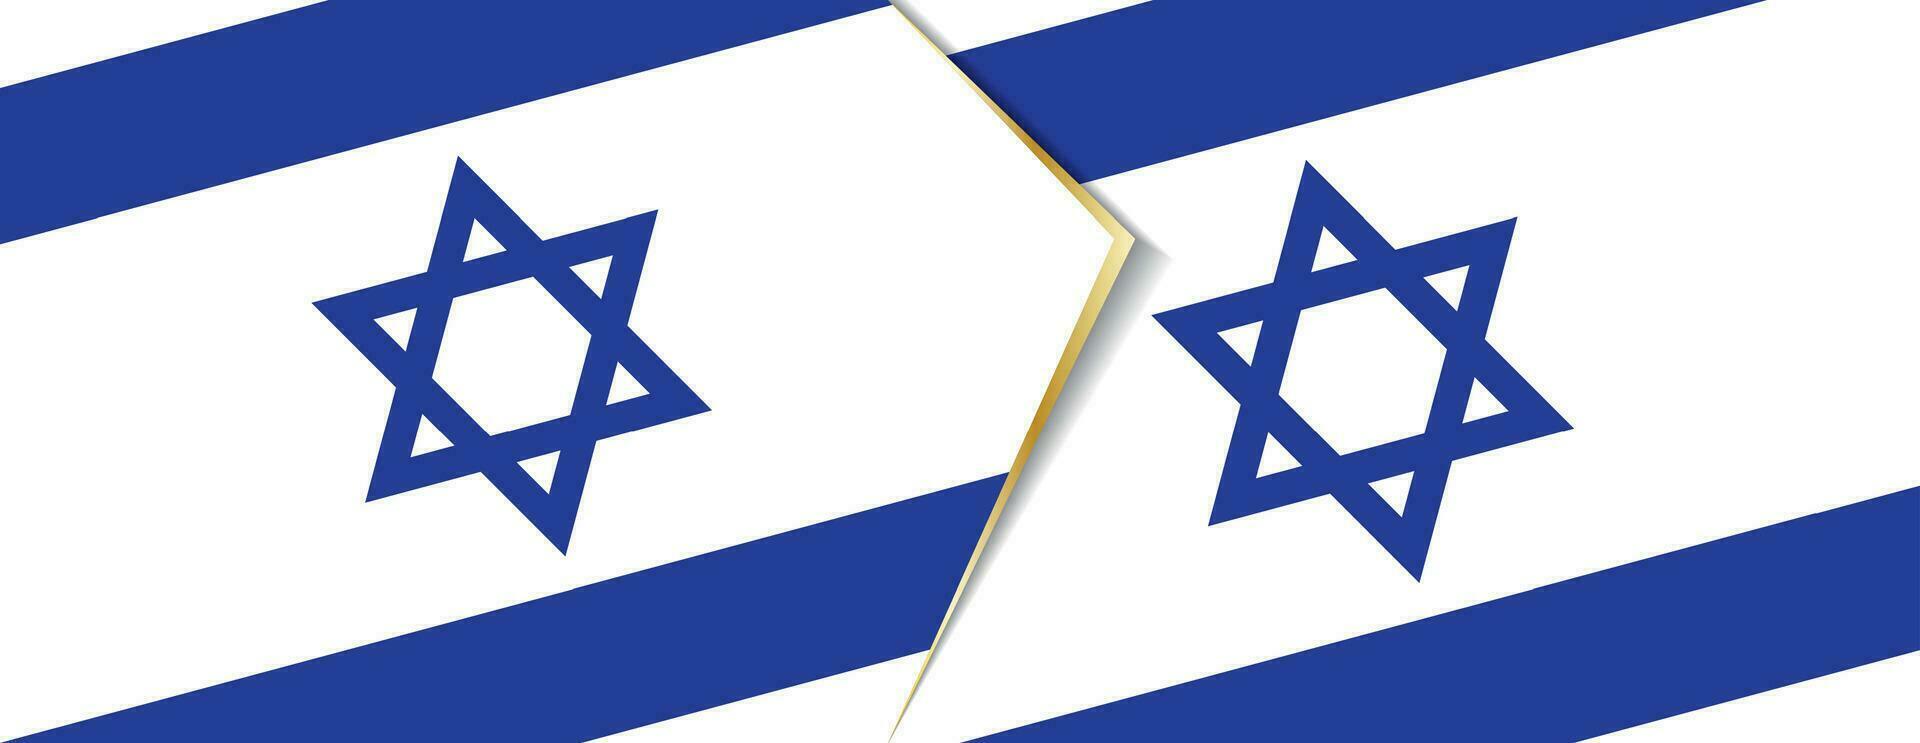 Israel y Bulgaria banderas, dos vector banderas